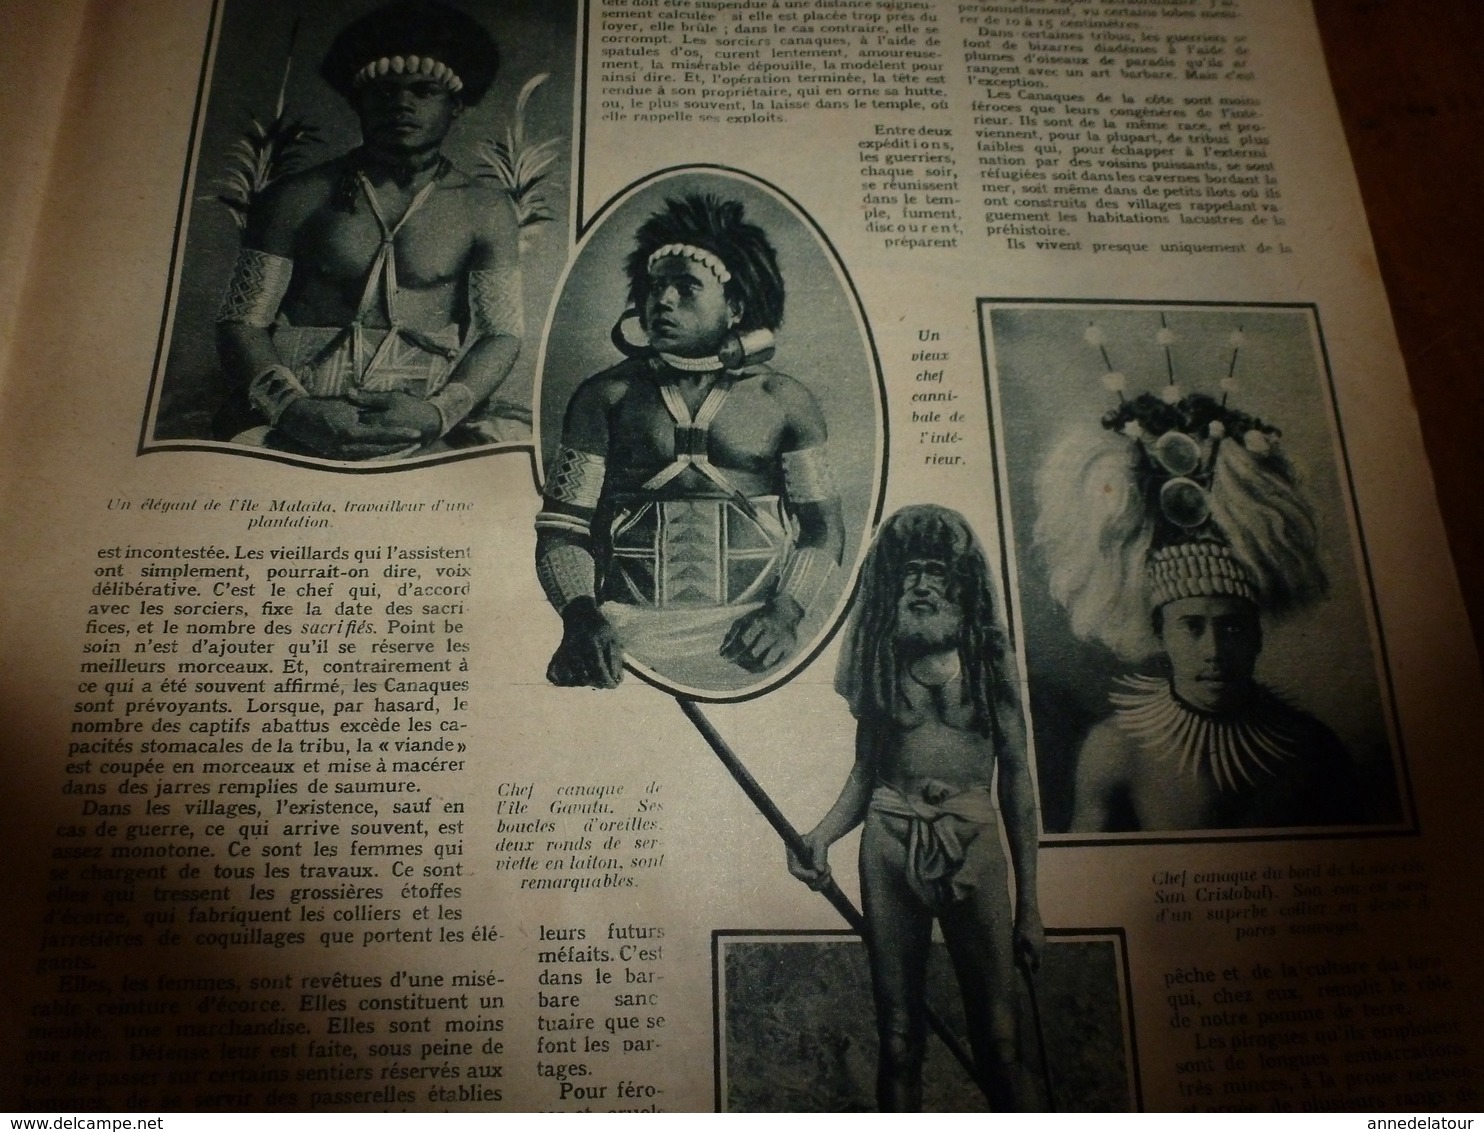 1922 SEV: Les danseuses royales du Cambodge , Sisowath; Les canaques;Devenir vétérinaire;Le ver a soie;Egypte;etc